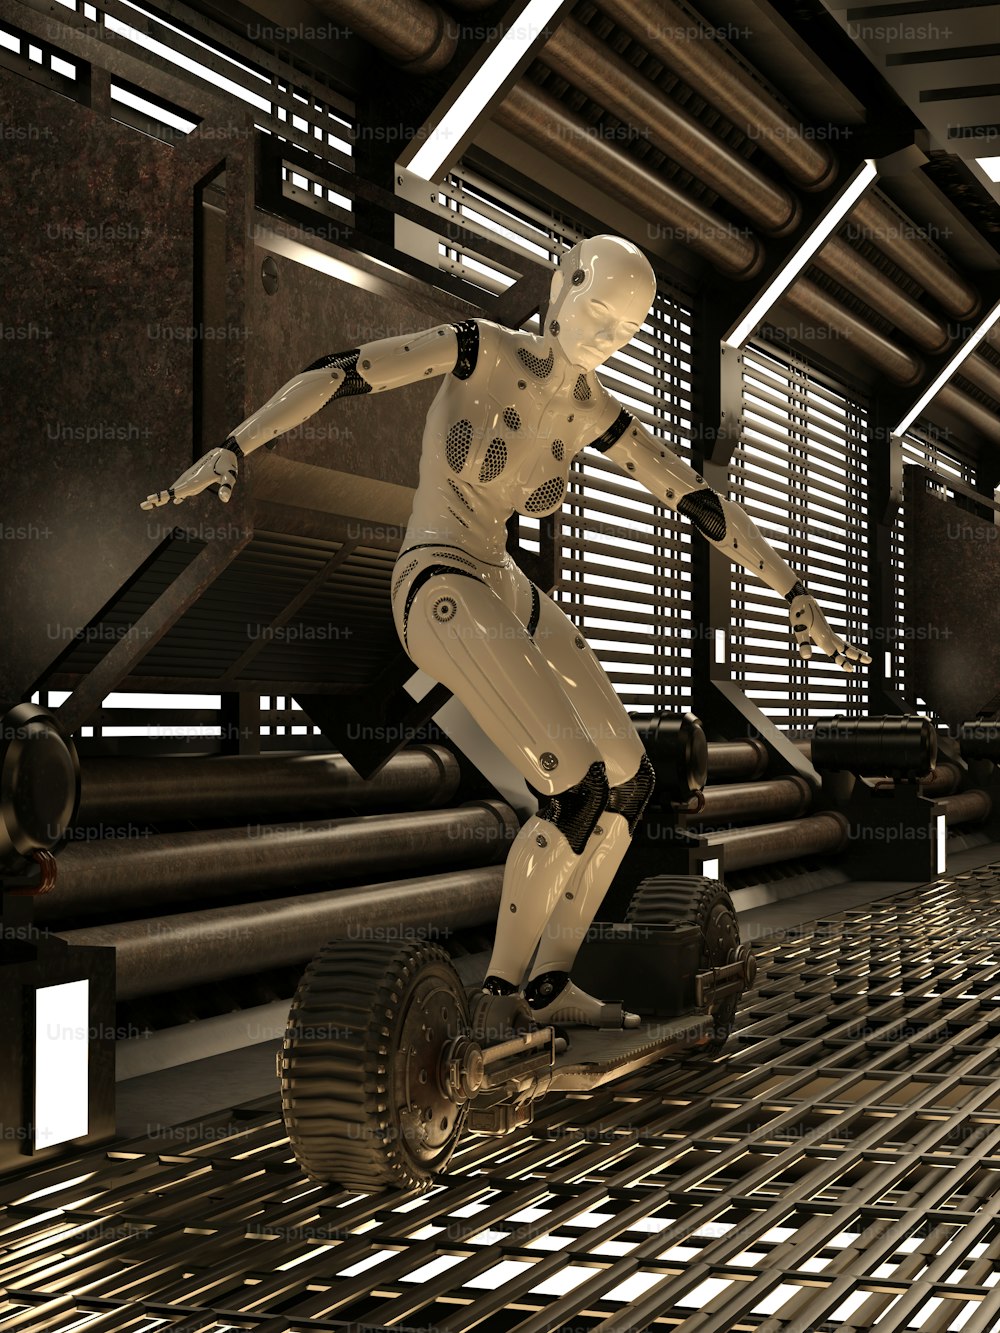 Un robot montado en un monopatín en una habitación